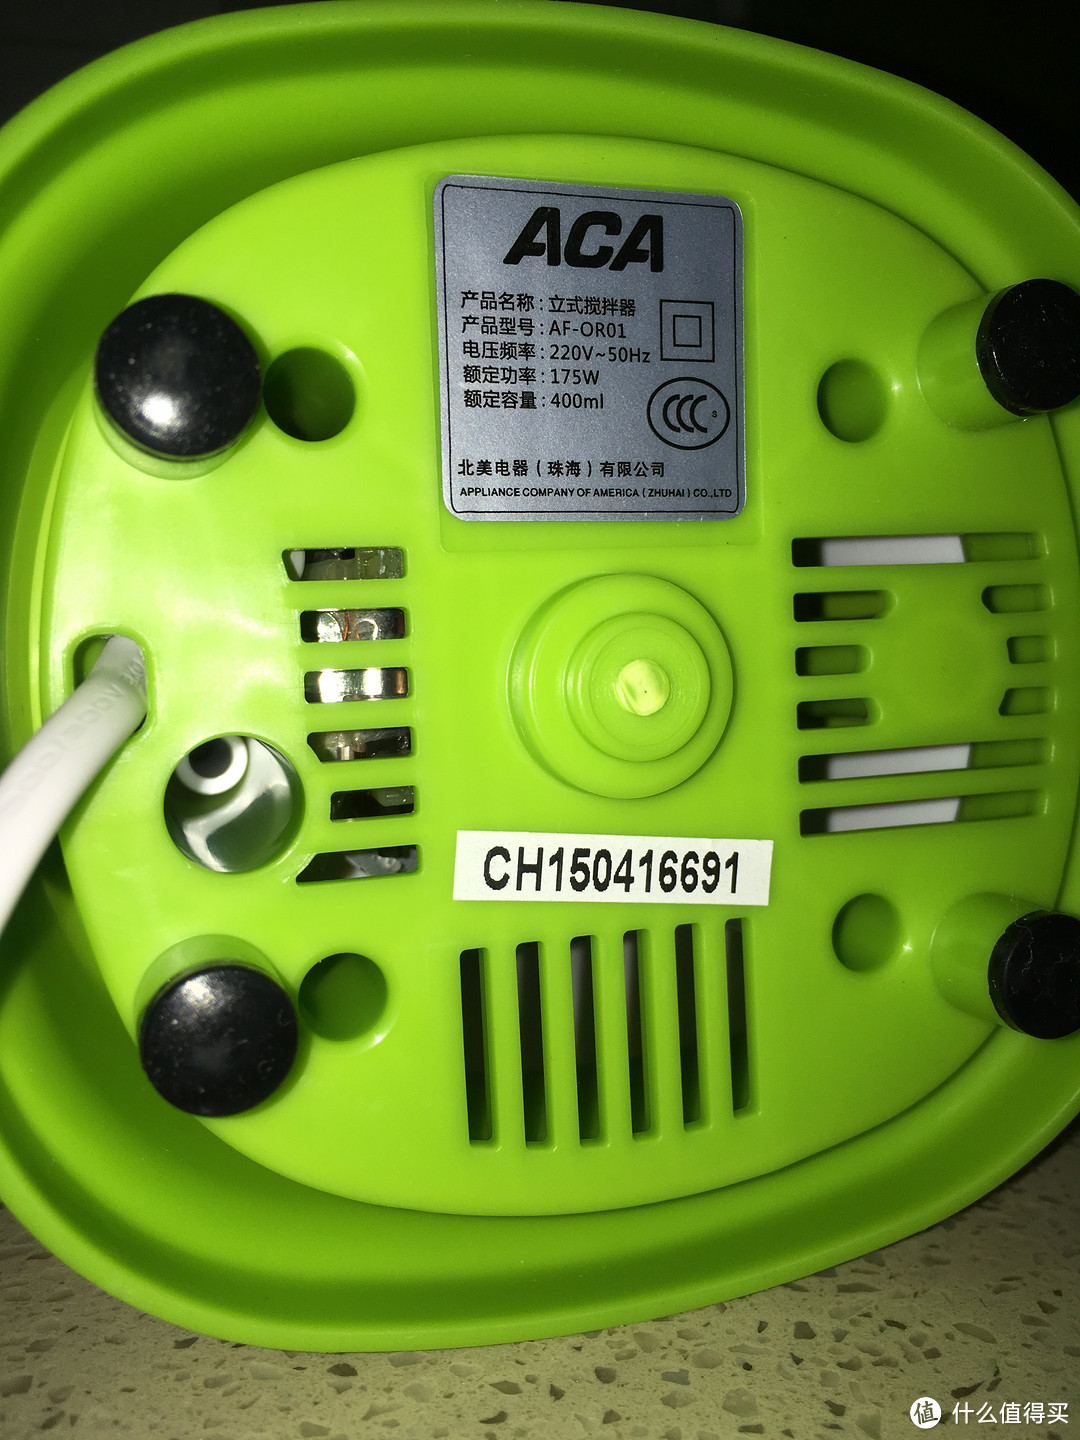 ACA 北美电器 AF-OR01 便携搅拌机 使用测评